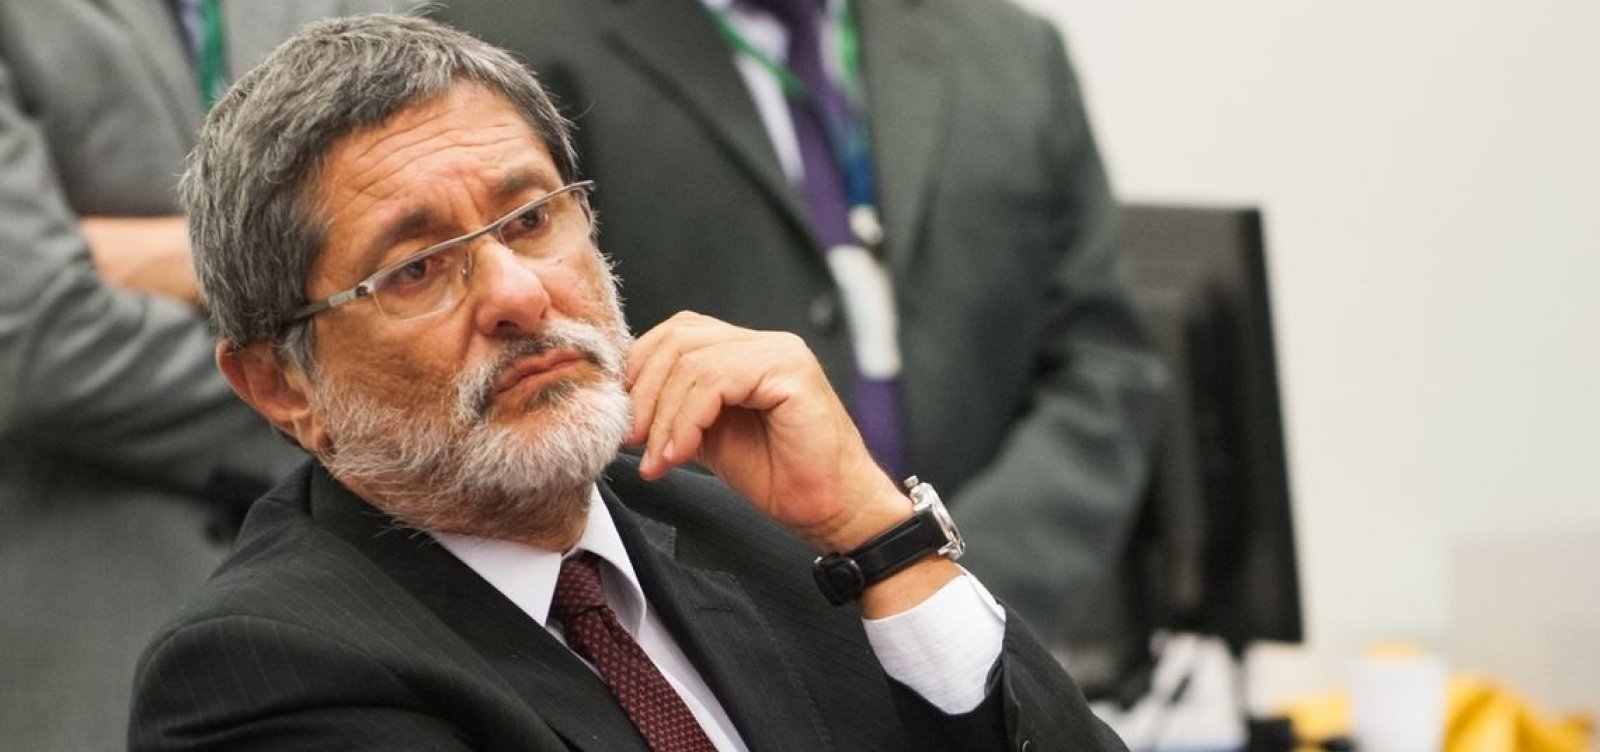 STJ restabelece aposentadoria de ex-presidente da Petrobras, Sérgio Gabrielli